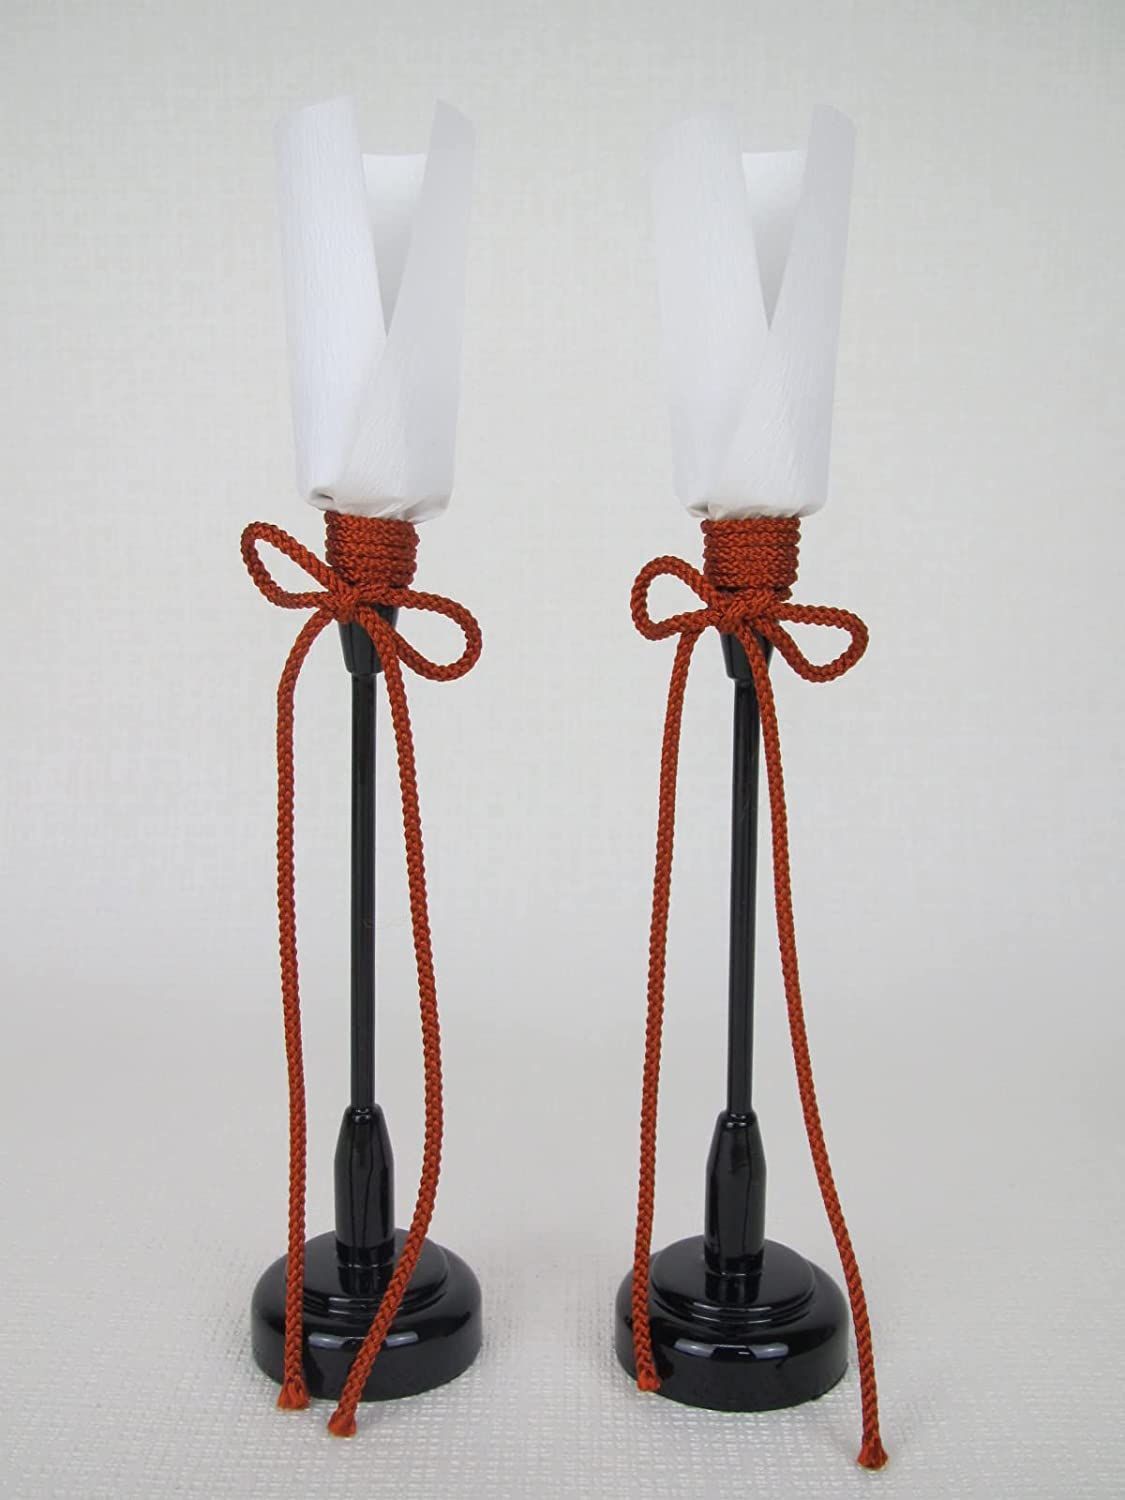 ひな人形部品売り 木製ぼんぼり 「油灯」雪洞 雛人形 道具 24cm - 弓戸